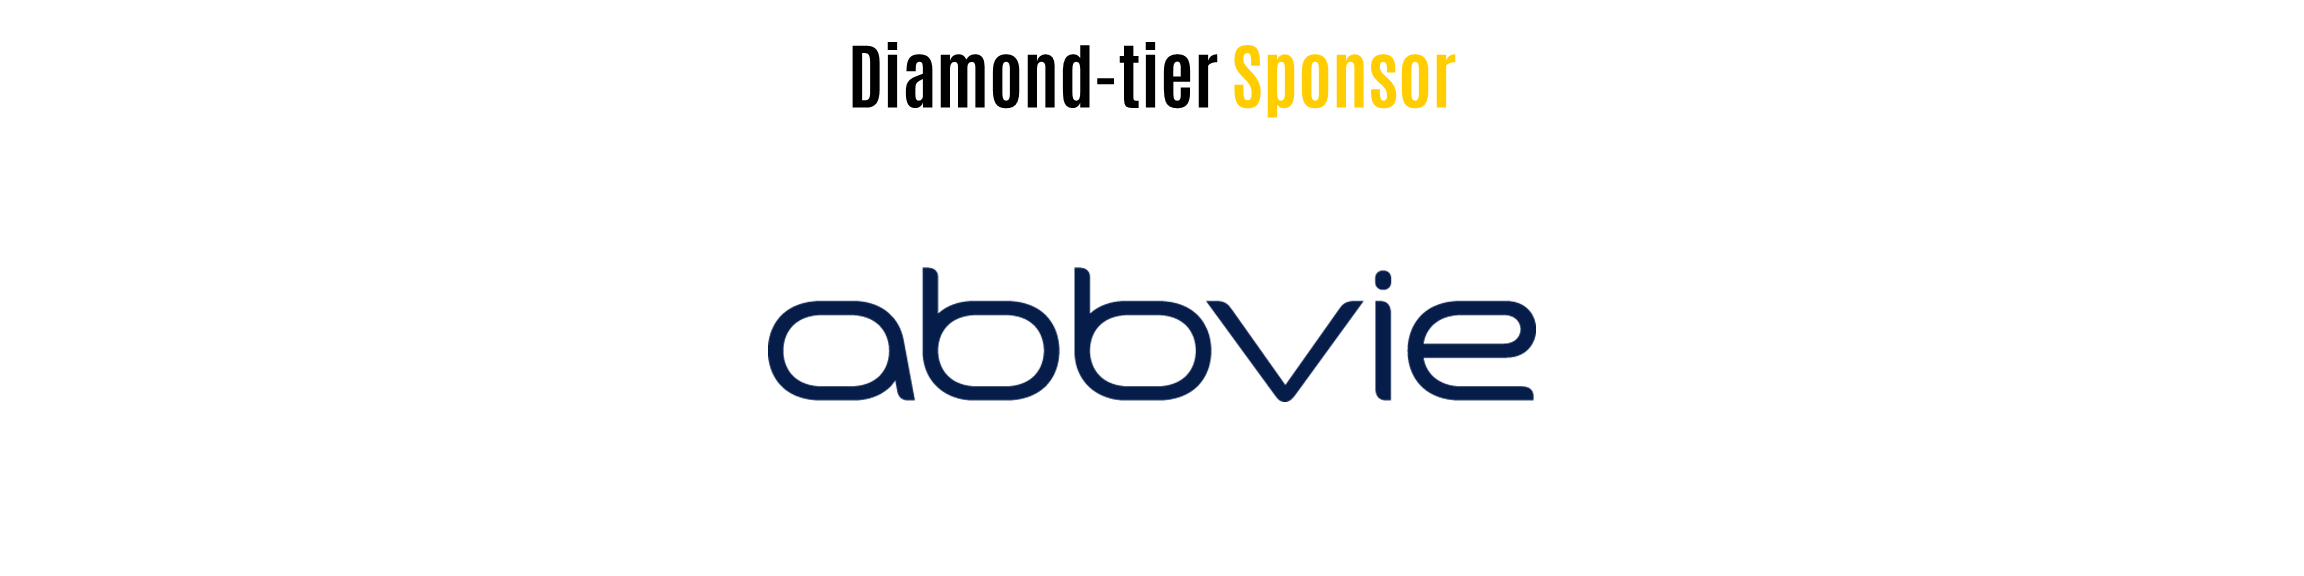 Diamond Sponsor - AbbVie.PNG